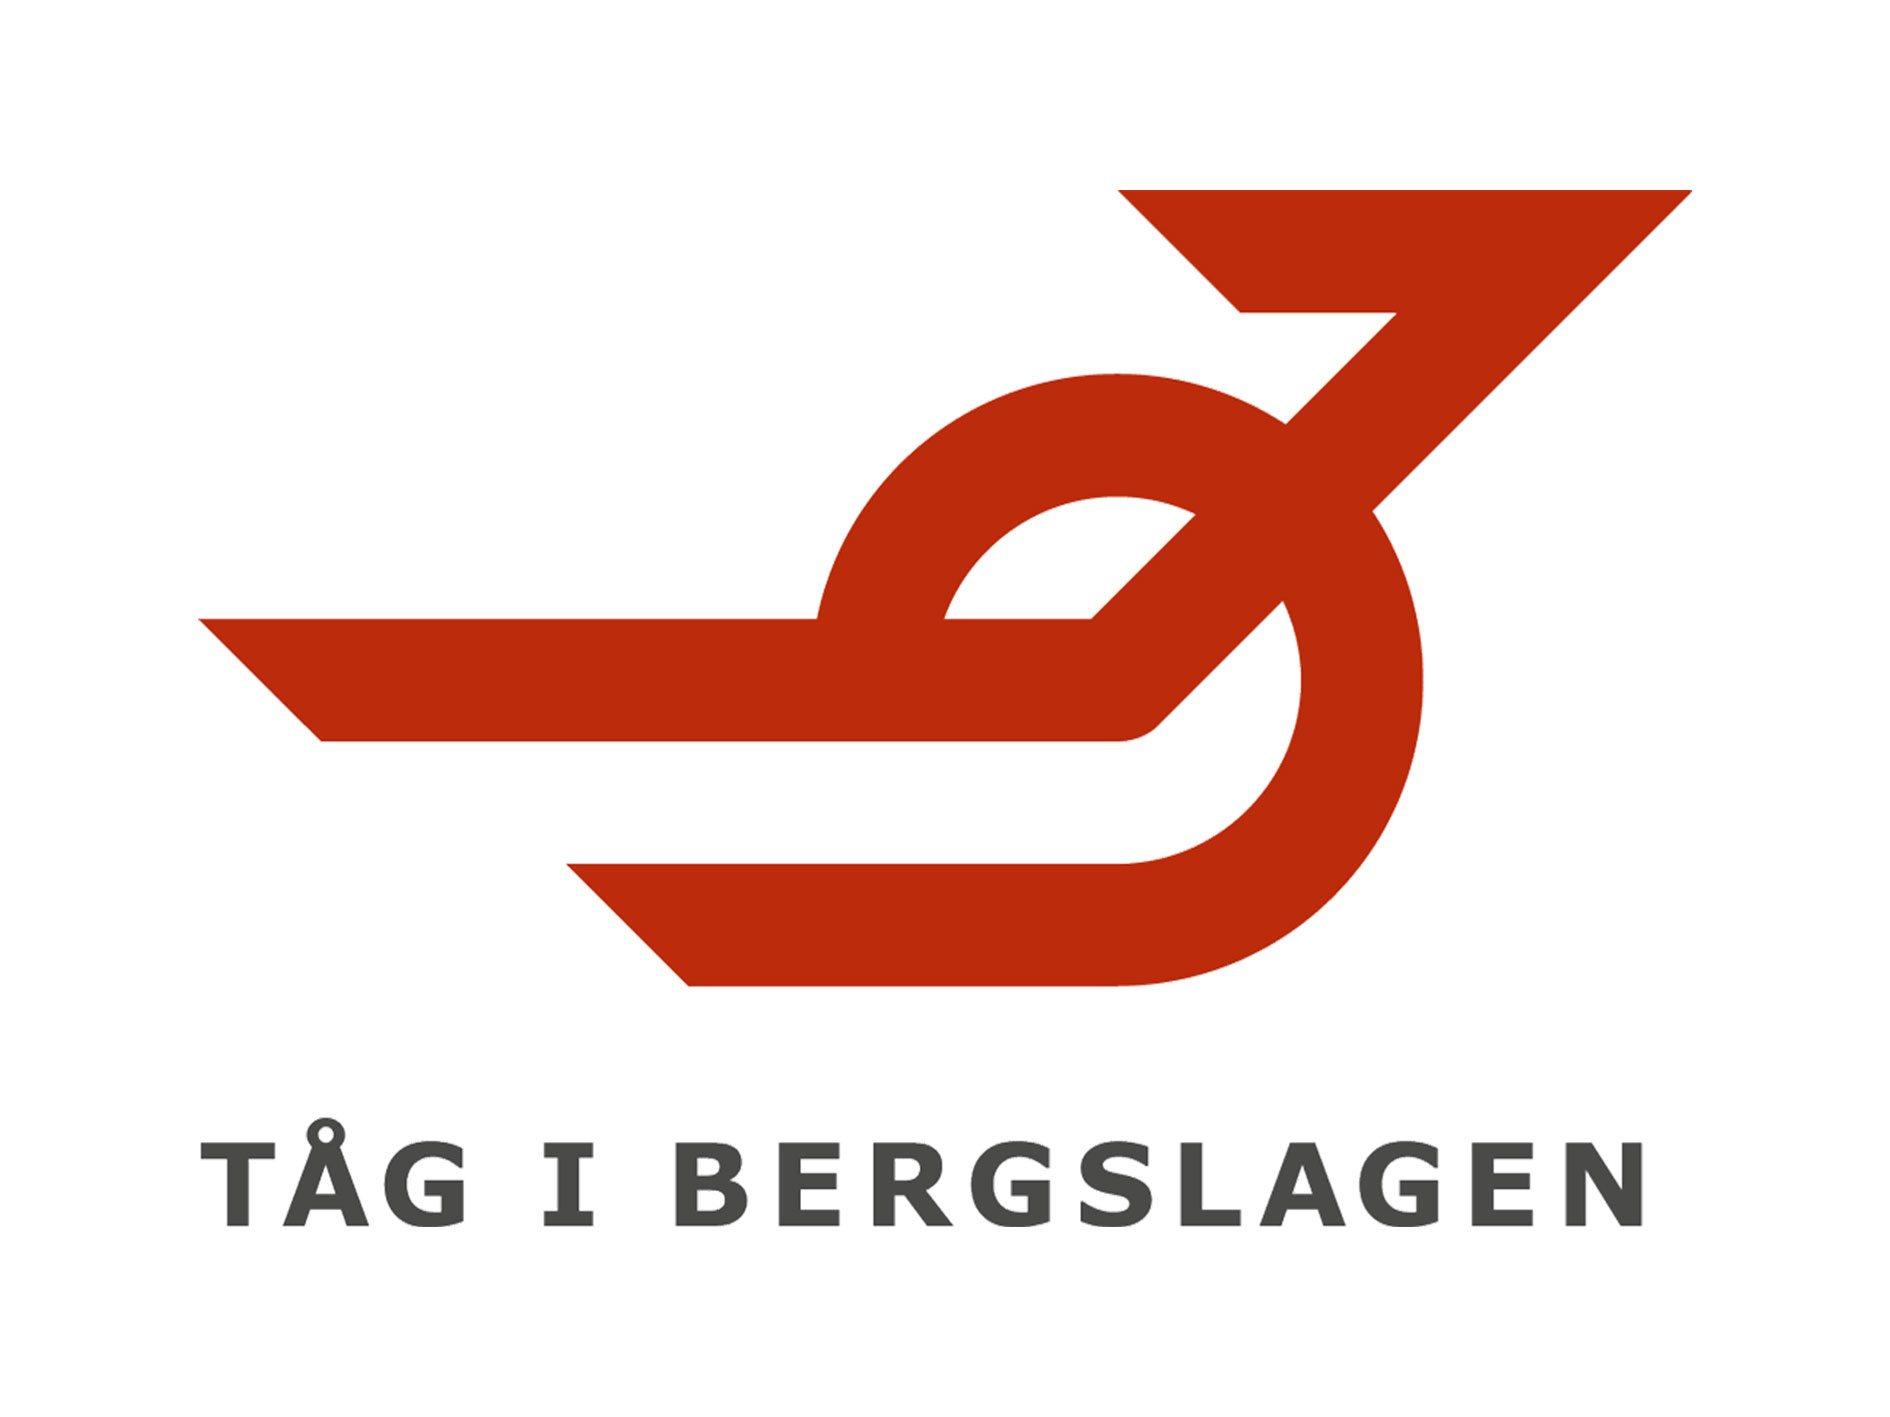 Logo of Tåg i Bergslagen